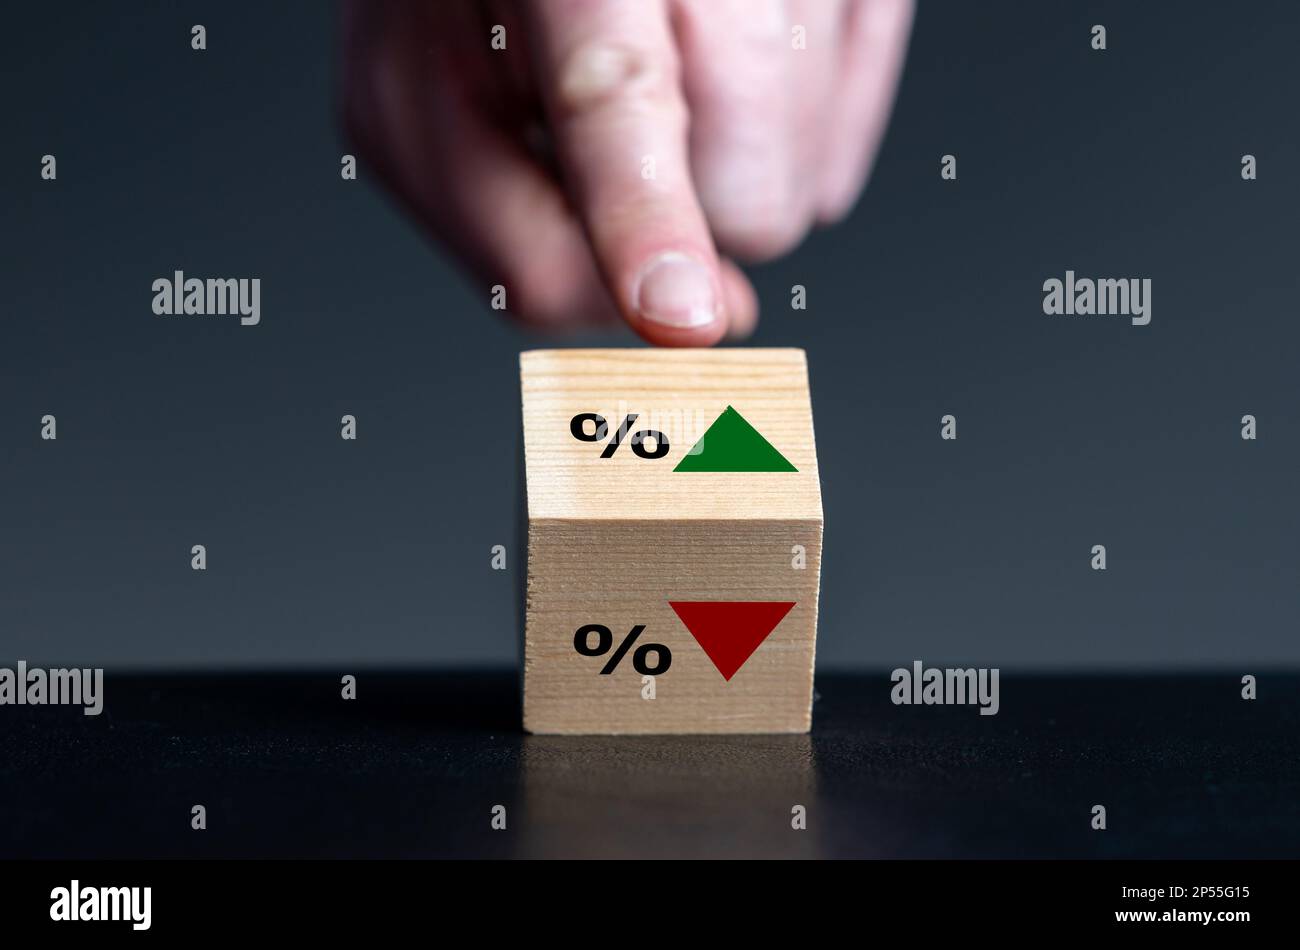 Simbolo dell'andamento del tasso di interesse. La mano gira il cubo di legno e cambia l'orientamento di una freccia da basso verso l'alto. Foto Stock